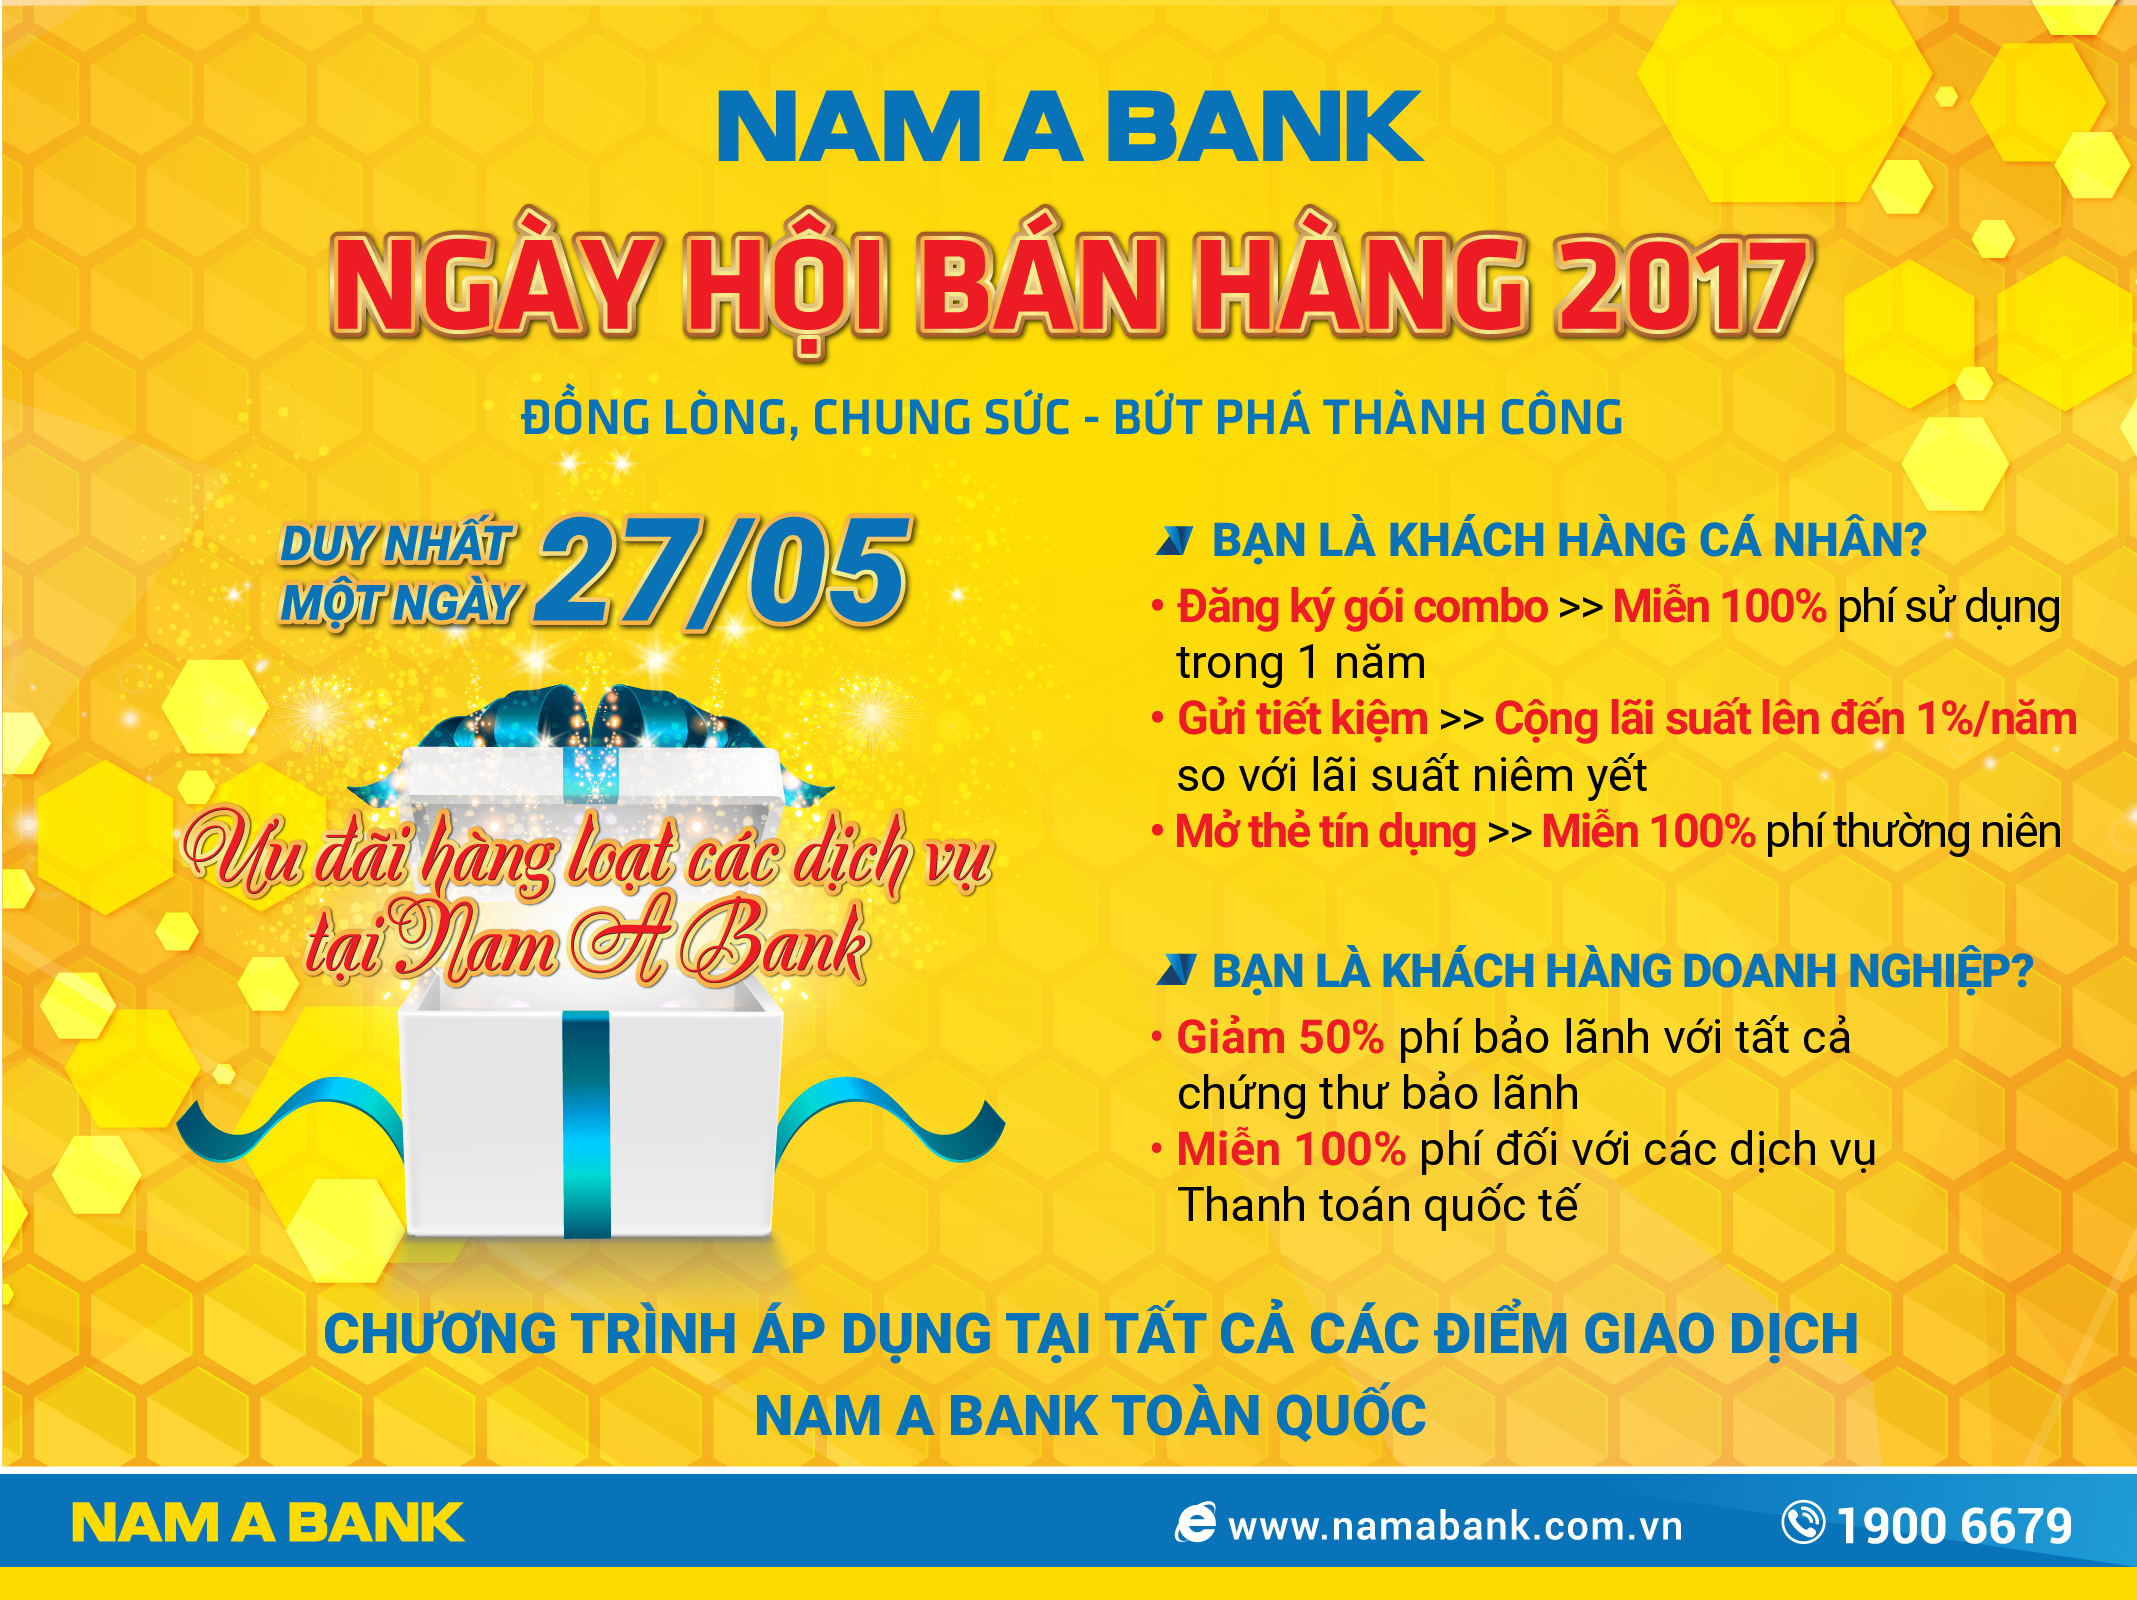 Hàng loạt ưu đãi trong ngày hội bán hàng NamABank 2017